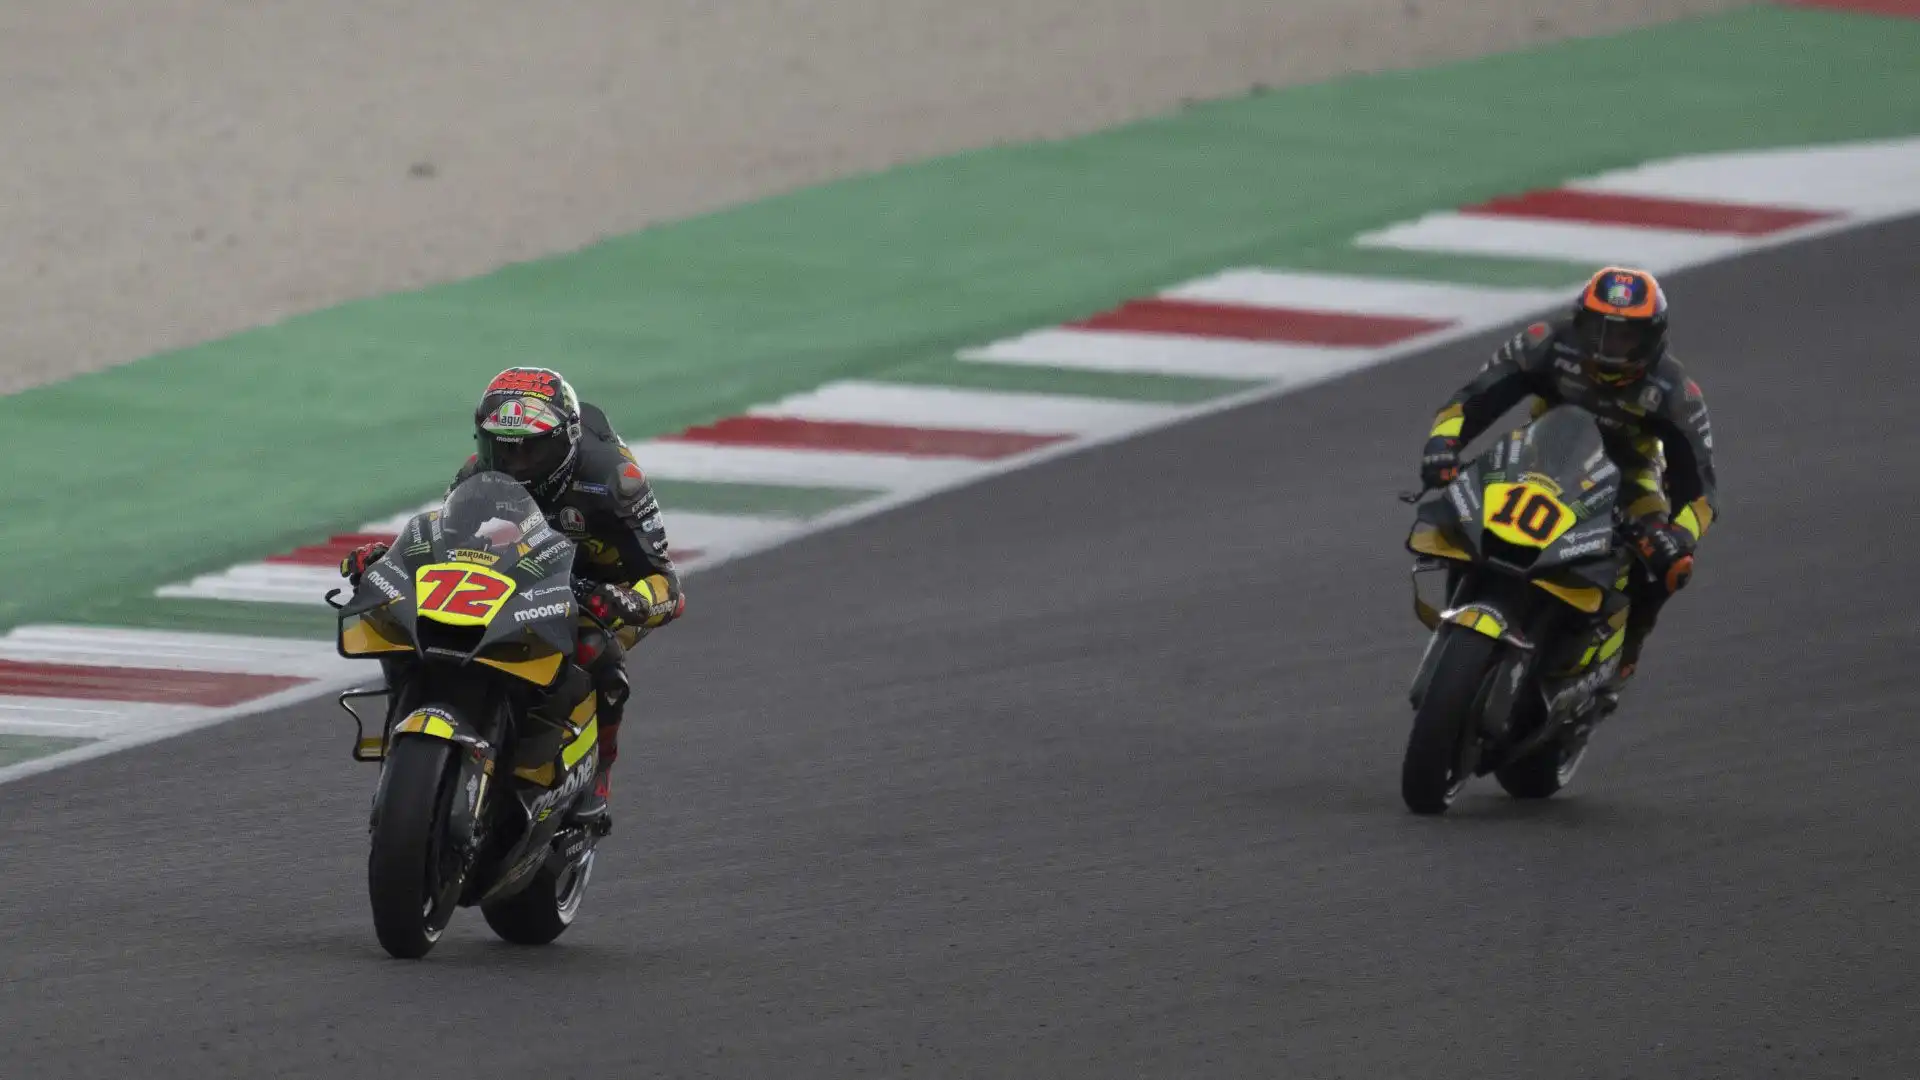 Anche per il prossimo anno, inoltre, le Ducati del team VR46 dovrebbero essere occupate da Luca Marini e Marco Bezzecchi